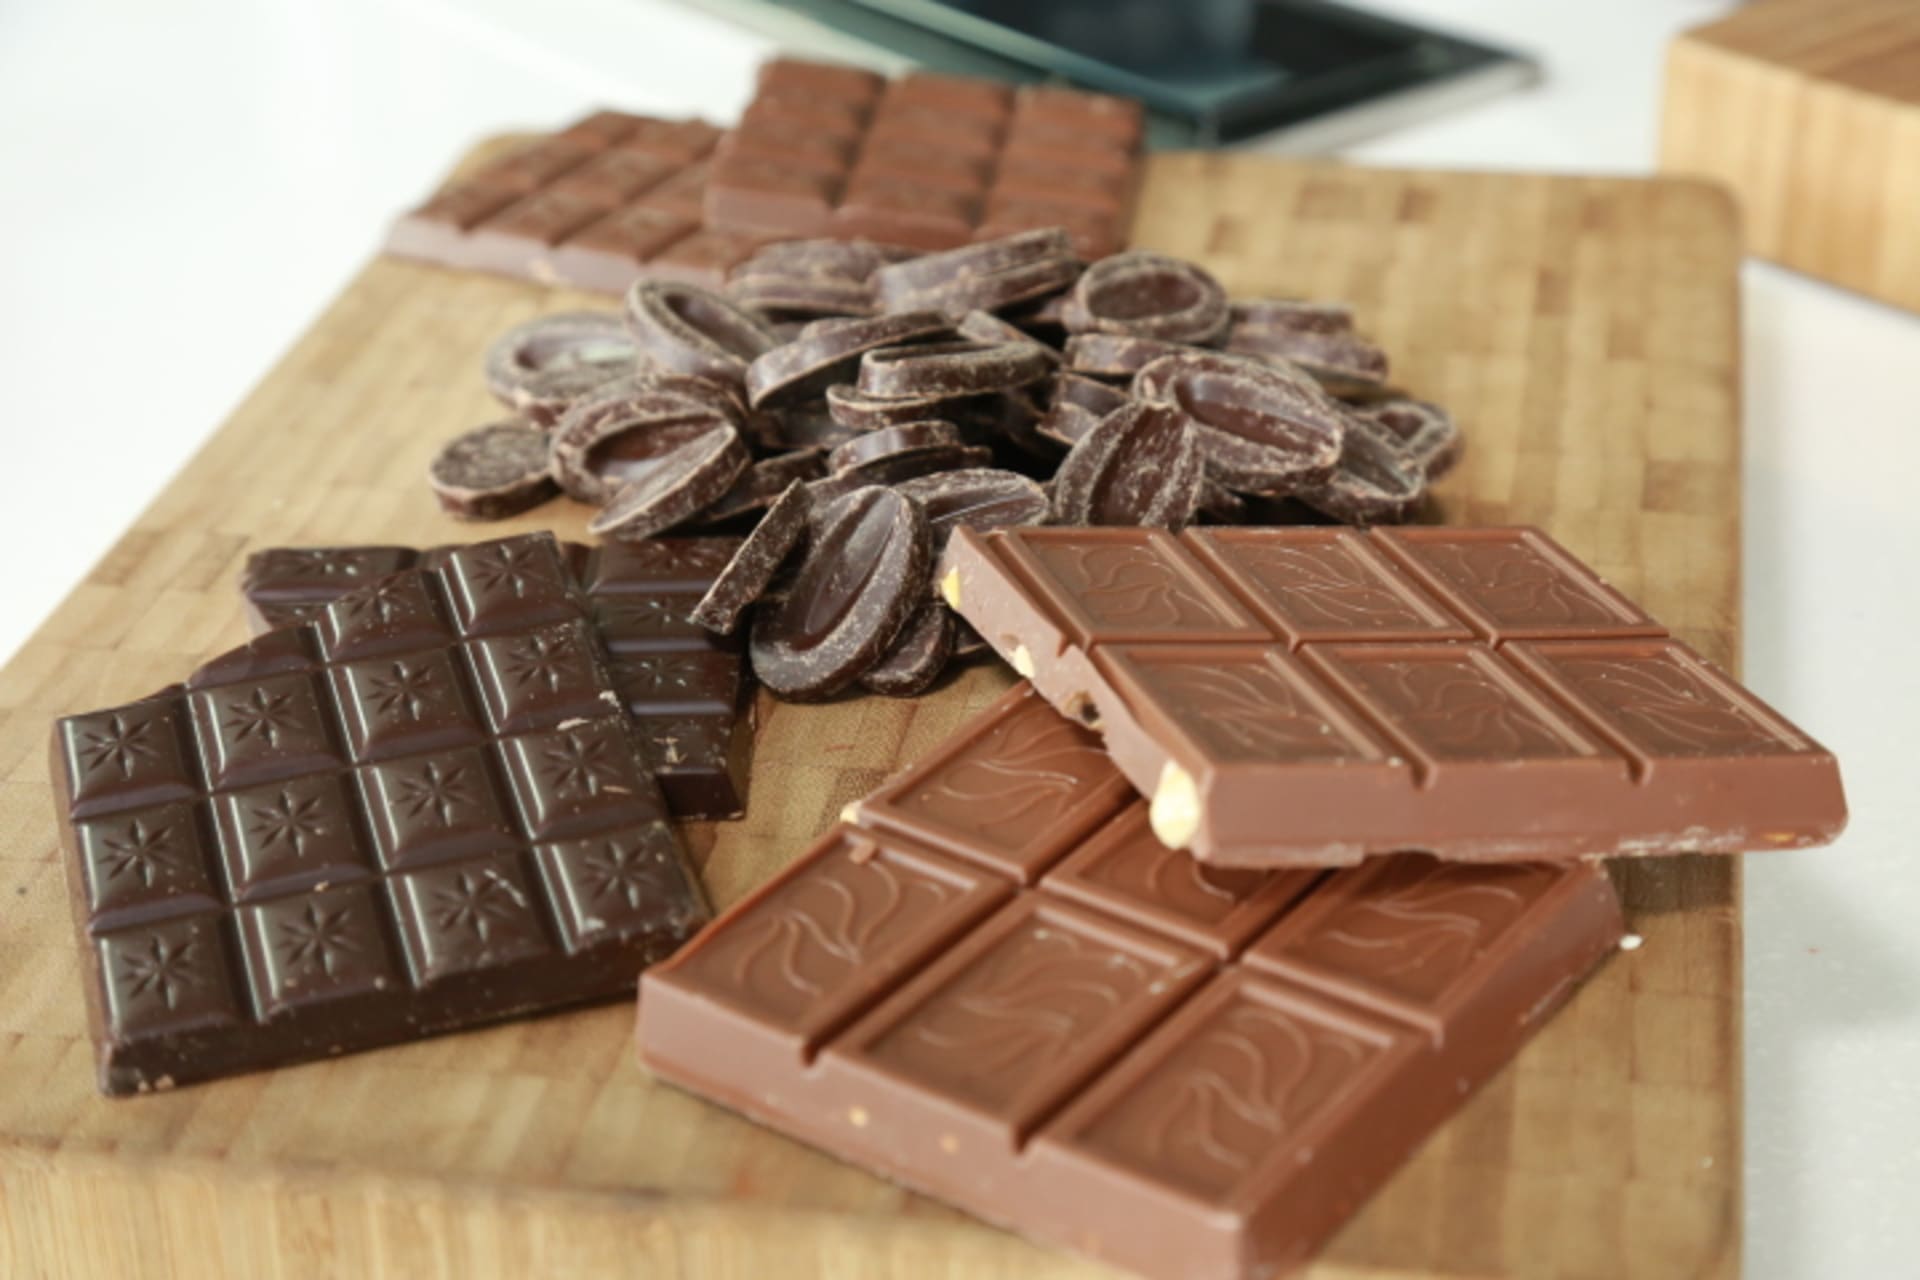 Šéf se pustil do čokolády. A v jeho podání uvidíte, že třeba hořká čokoláda sluší i kančímu masu.